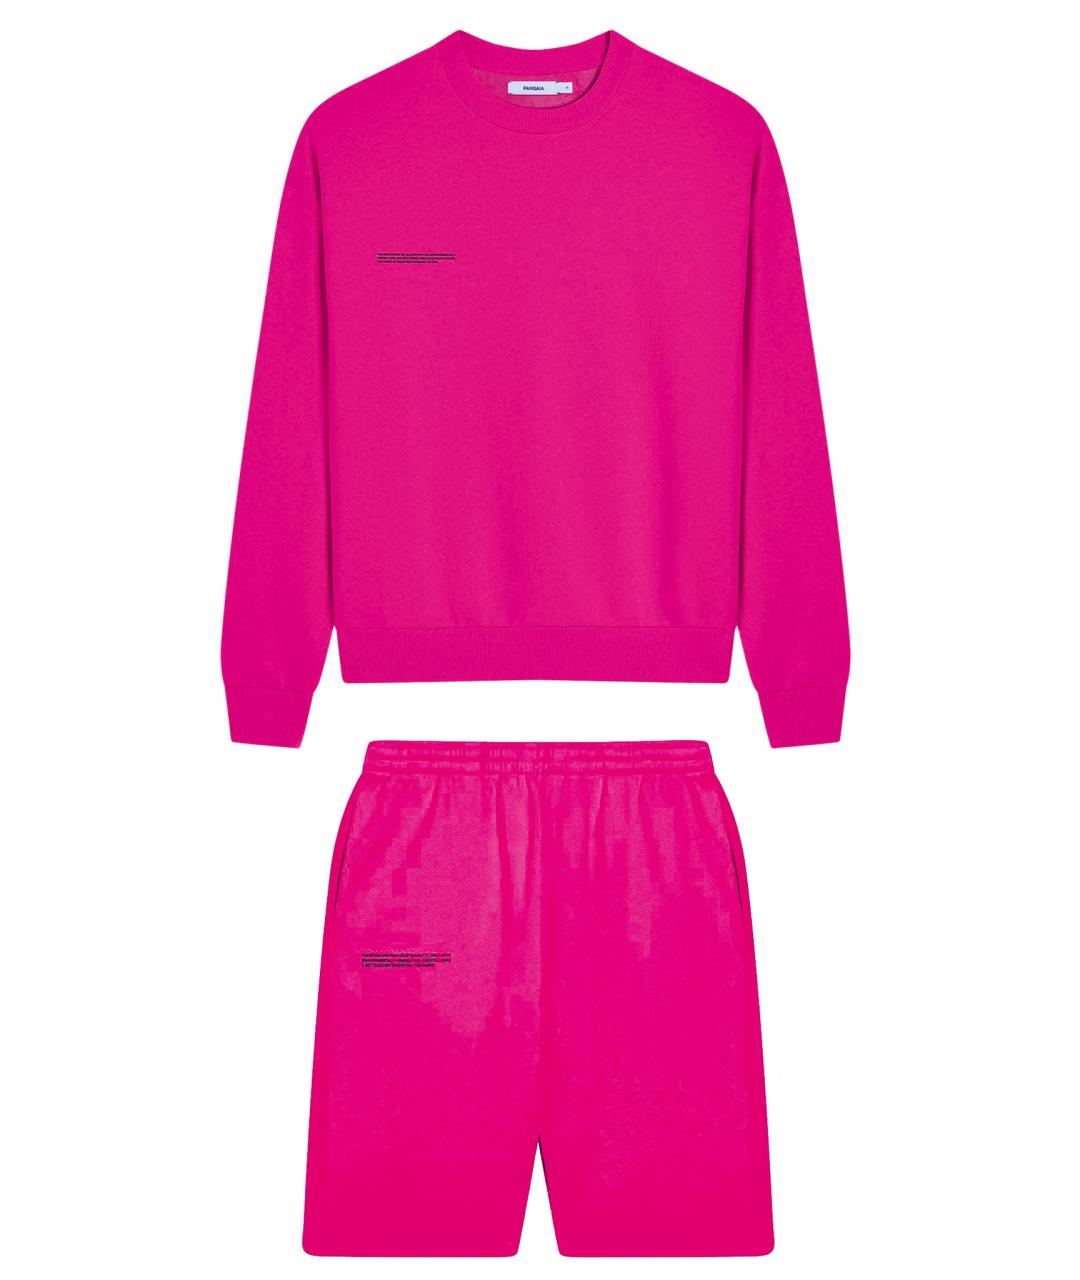 THE PANGAIA Розовый хлопковый спортивные костюмы, фото 1